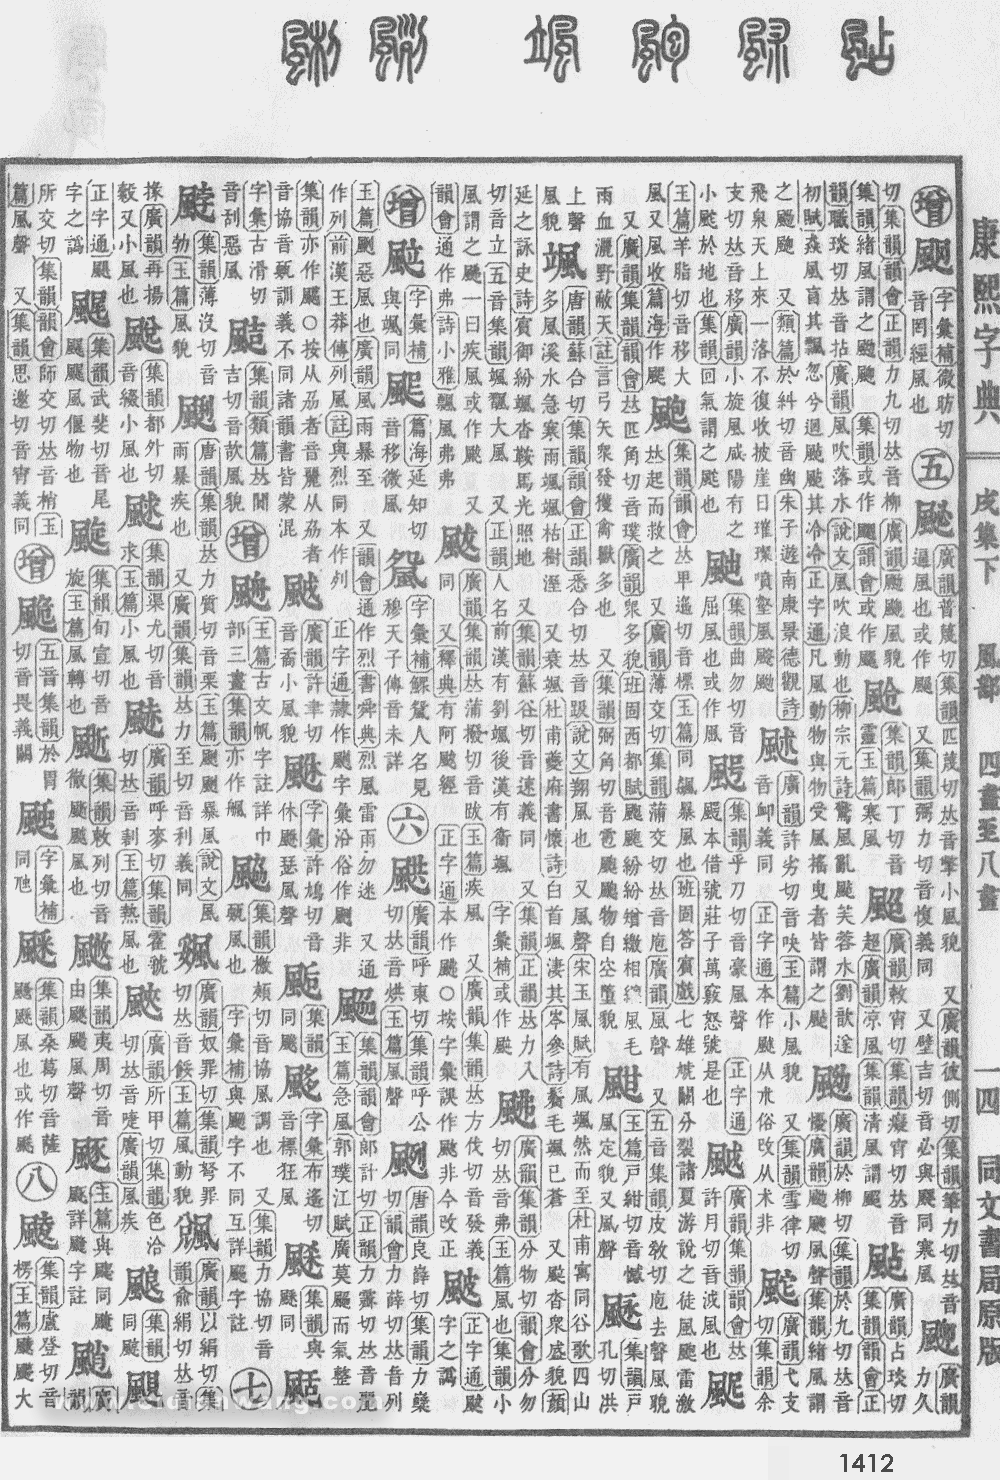 康熙字典掃描版第1412頁